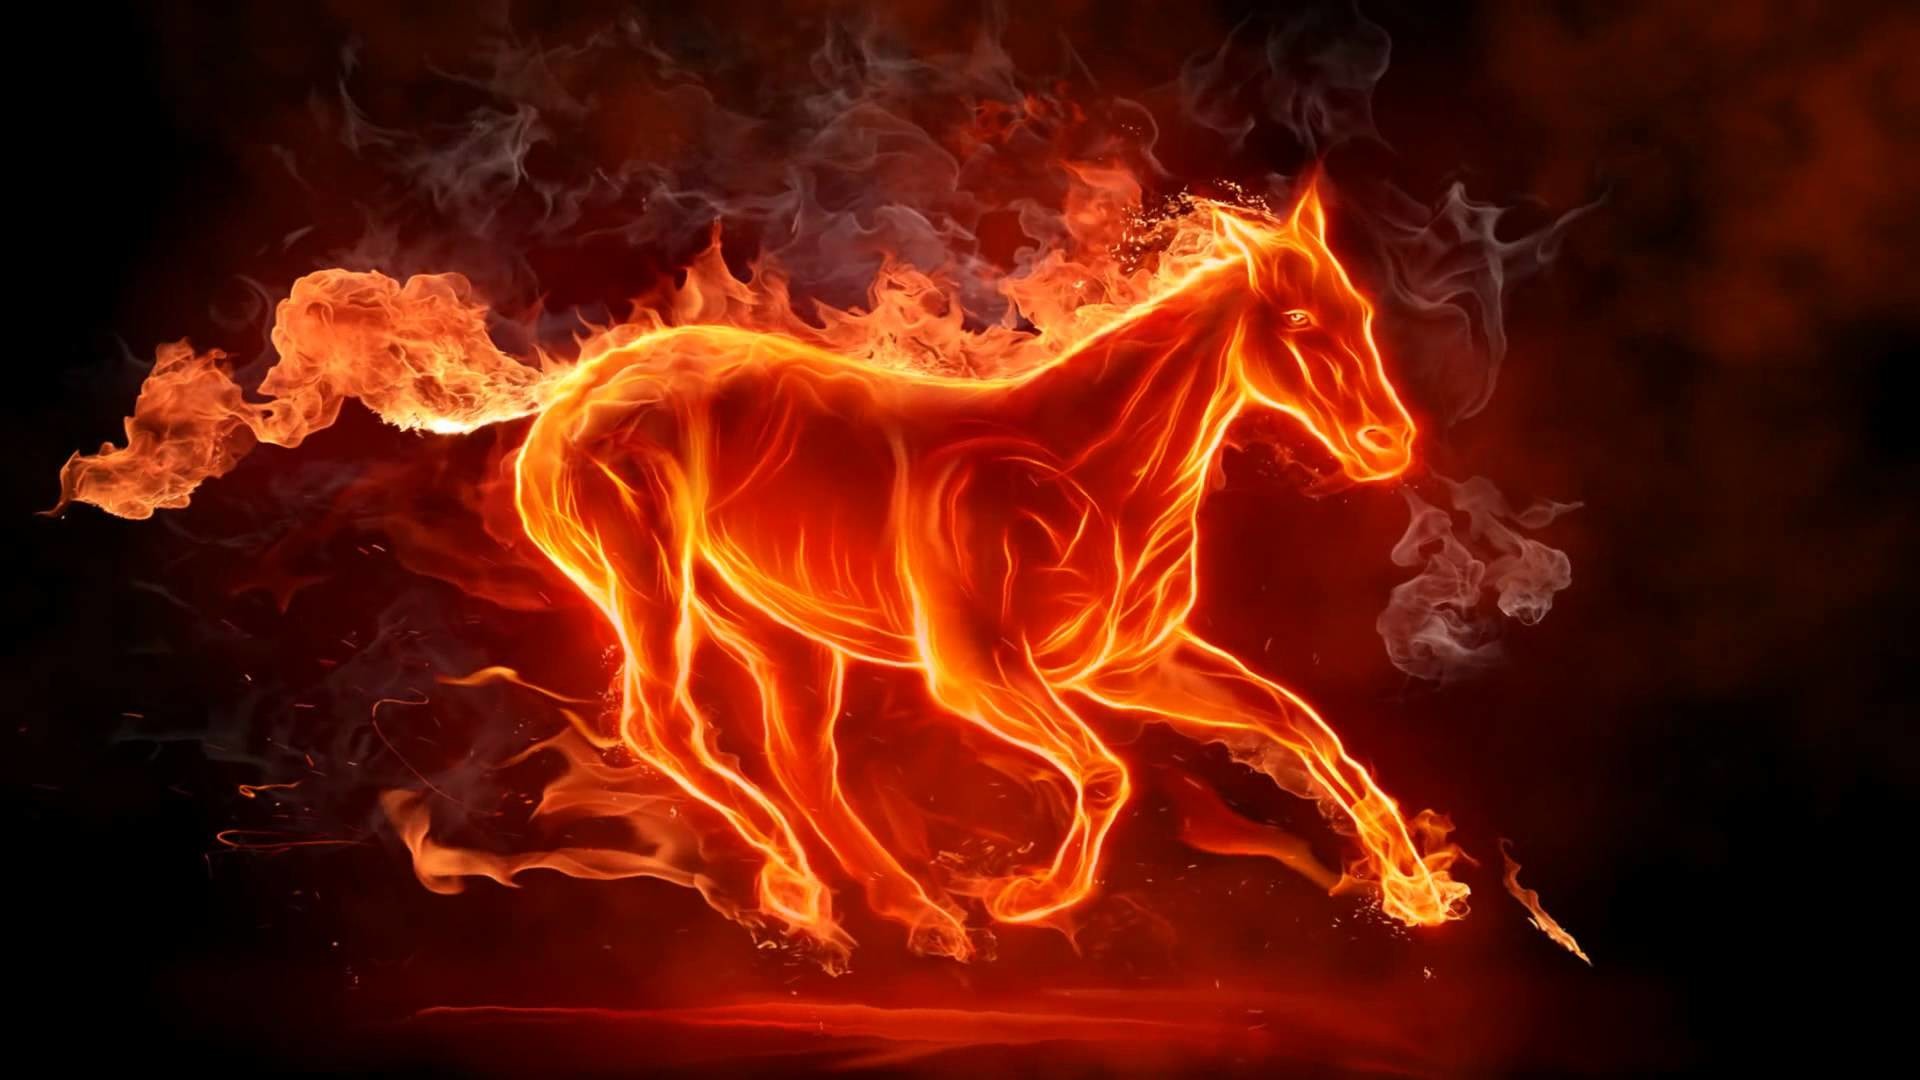 1920x1080 Fire Horse Animated Wallpaper http://www.desktopanimated.com